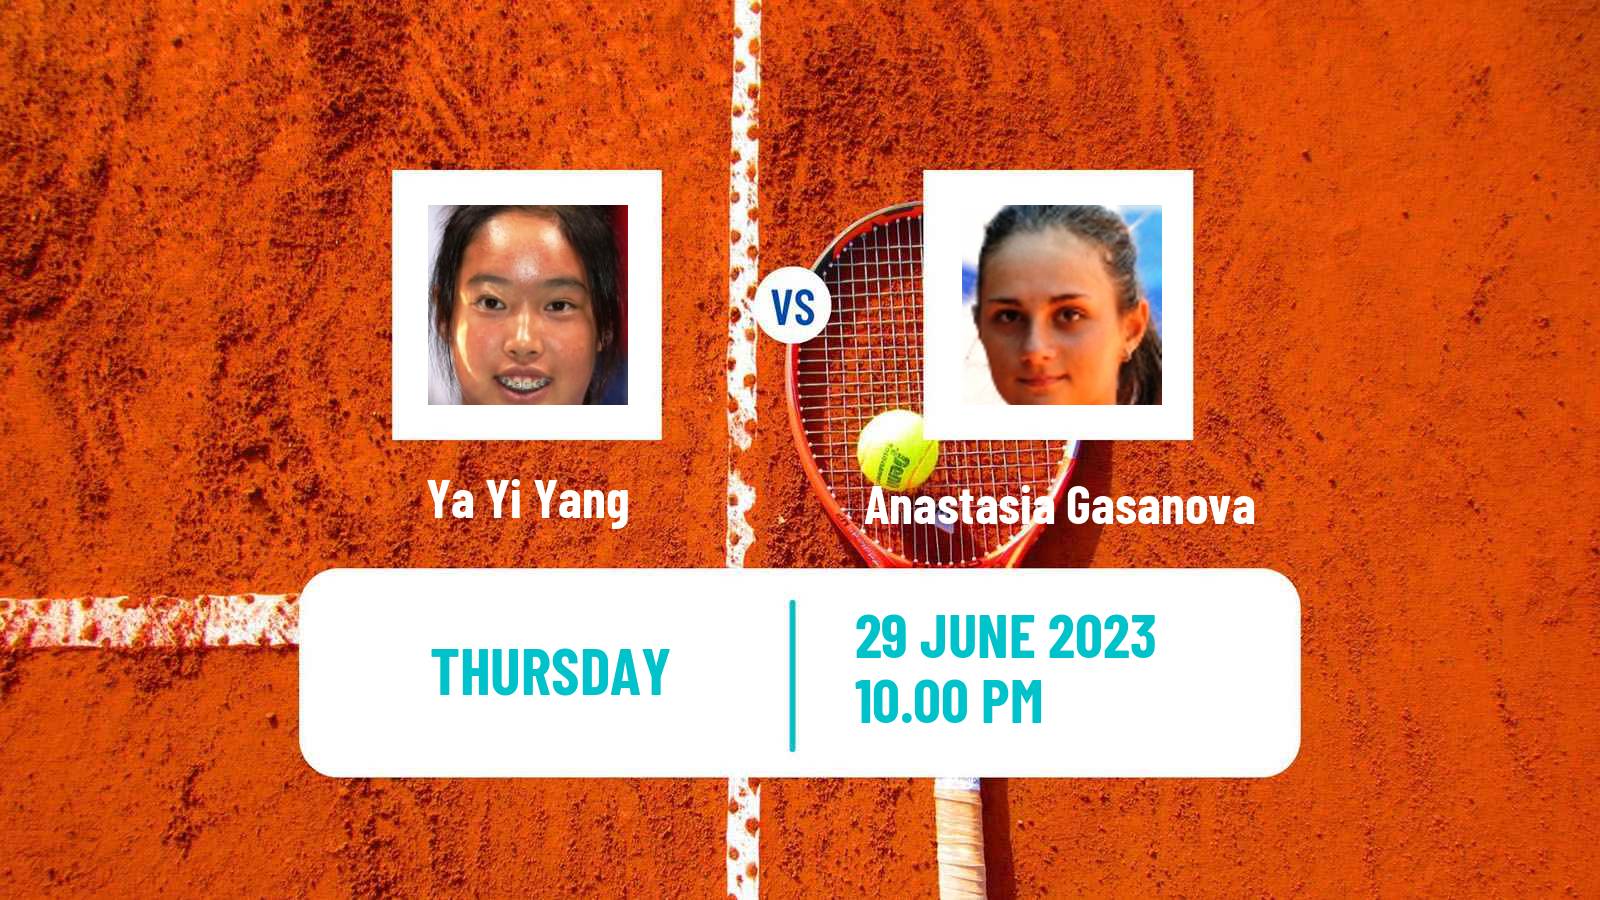 Tennis ITF W25 Hong Kong Women Ya Yi Yang - Anastasia Gasanova